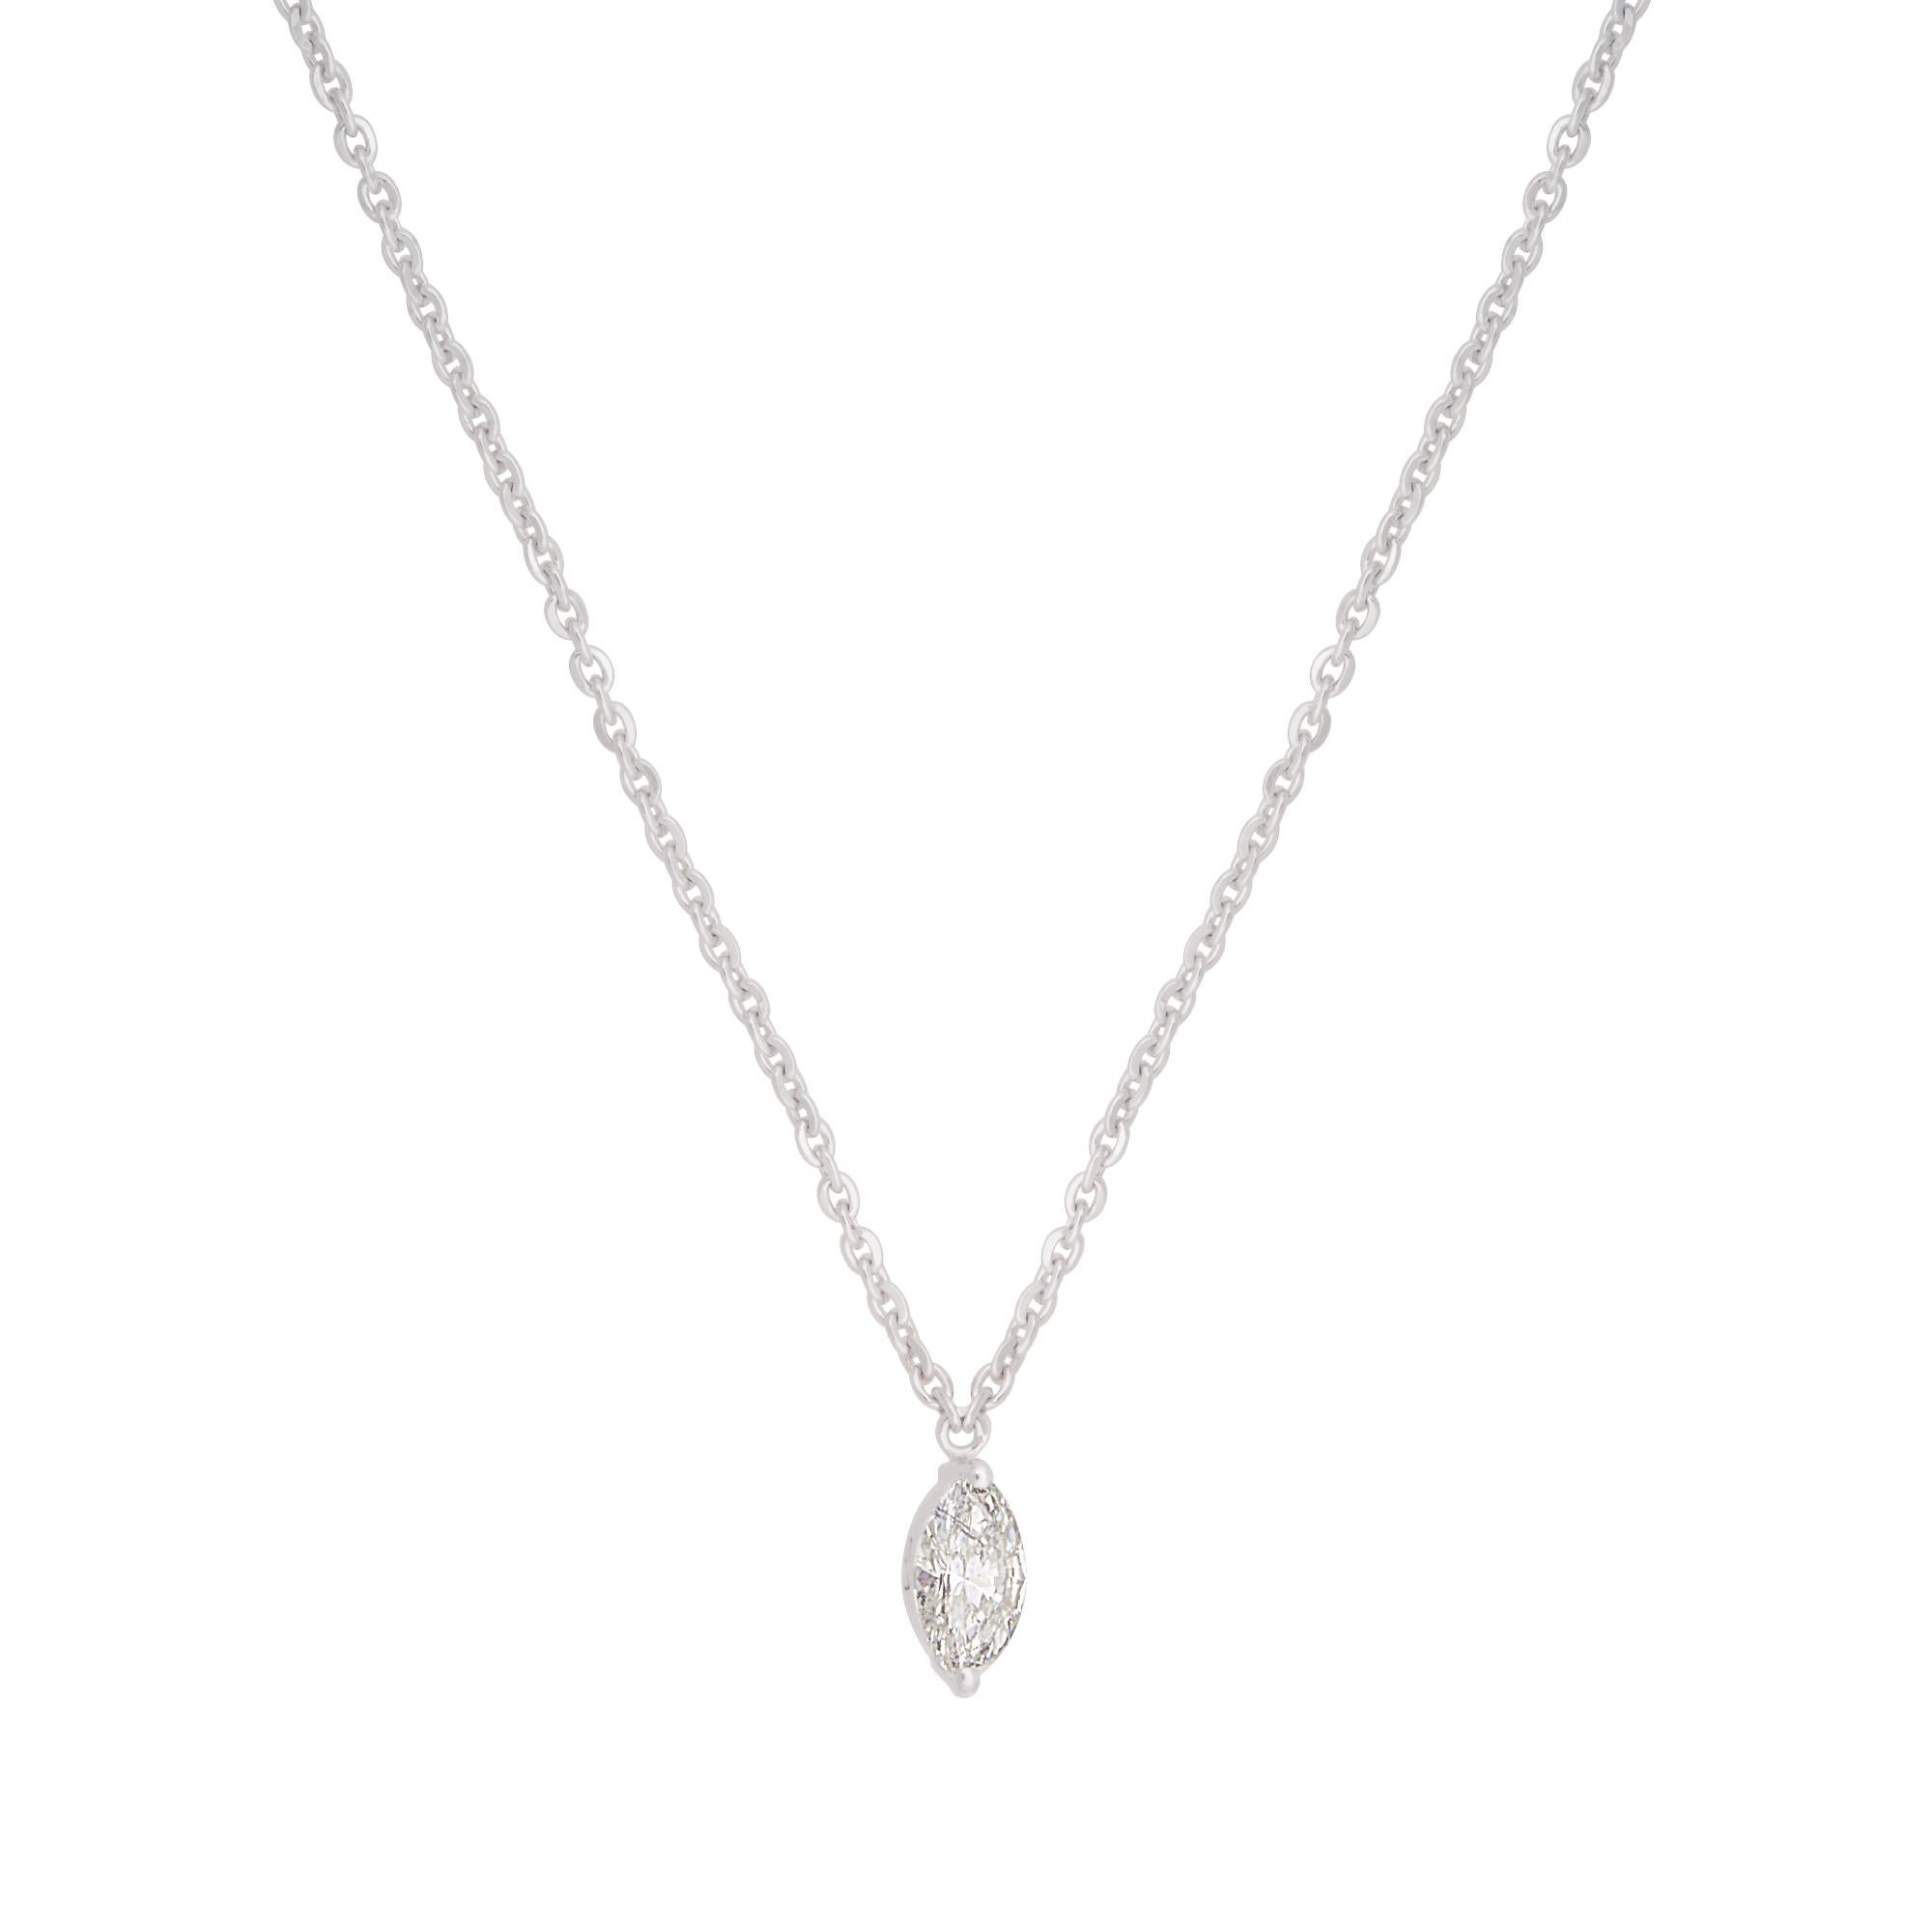 La pièce maîtresse de ce collier est un superbe diamant solitaire de taille marquise, pesant 0,35 carats. La coupe marquise, avec sa forme allongée et ses extrémités pointues, crée un sentiment de sophistication et d'unicité. La brillance et la